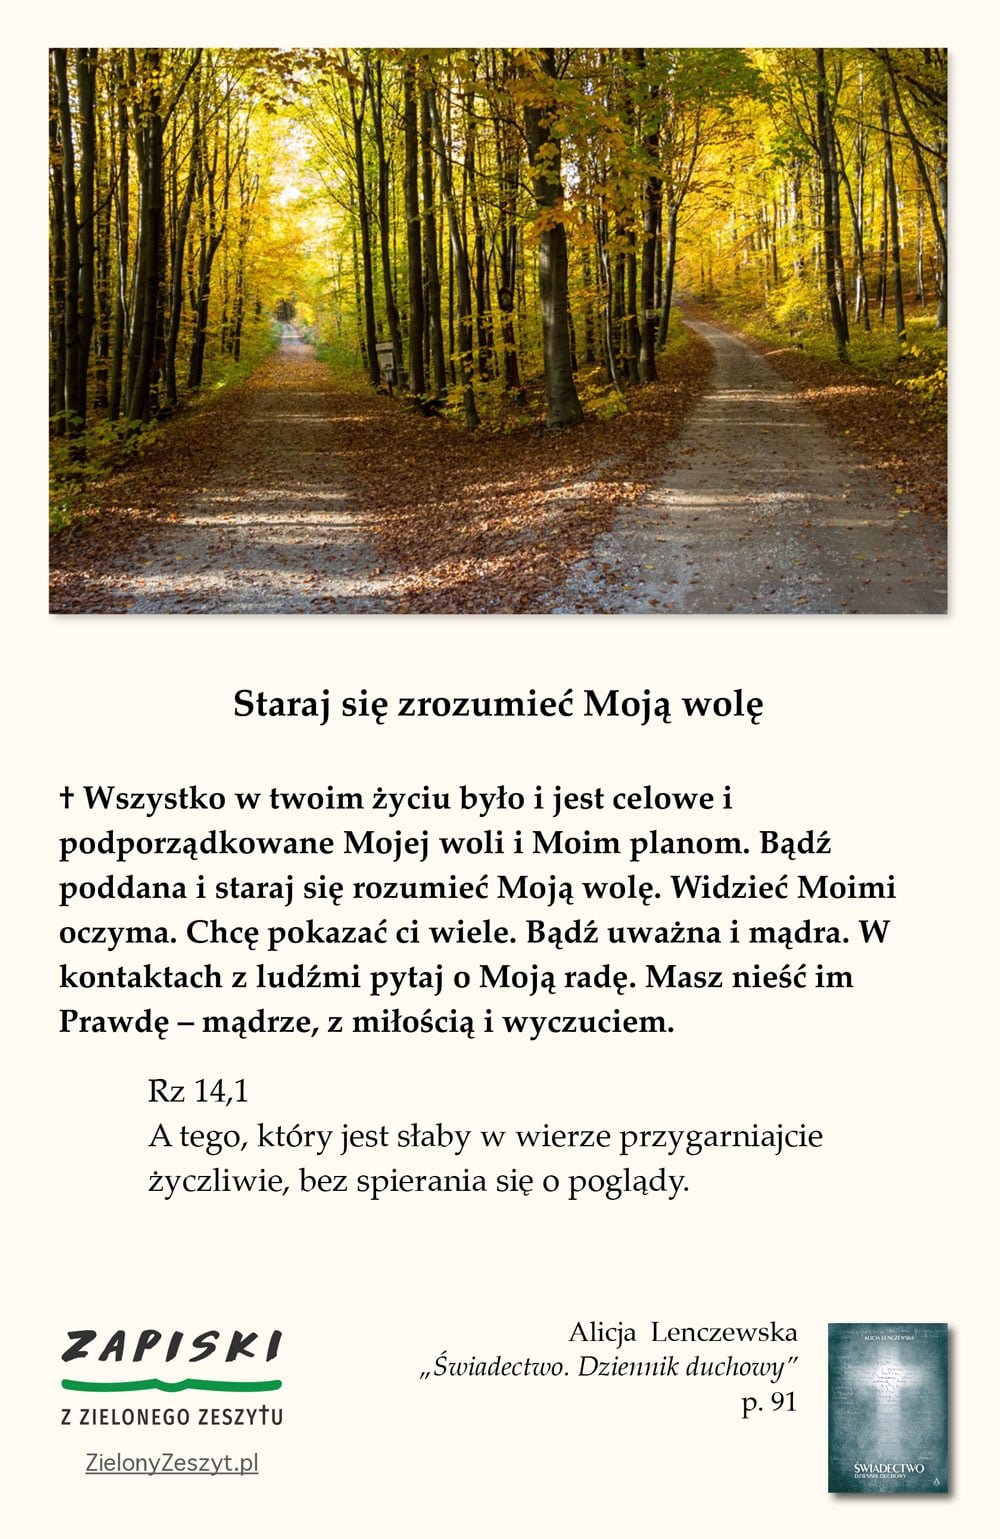 Alicja Lenczewska, „Świadectwo. Dziennik duchowy”, p. 91 (Staraj się zrozumieć Moją wolę)